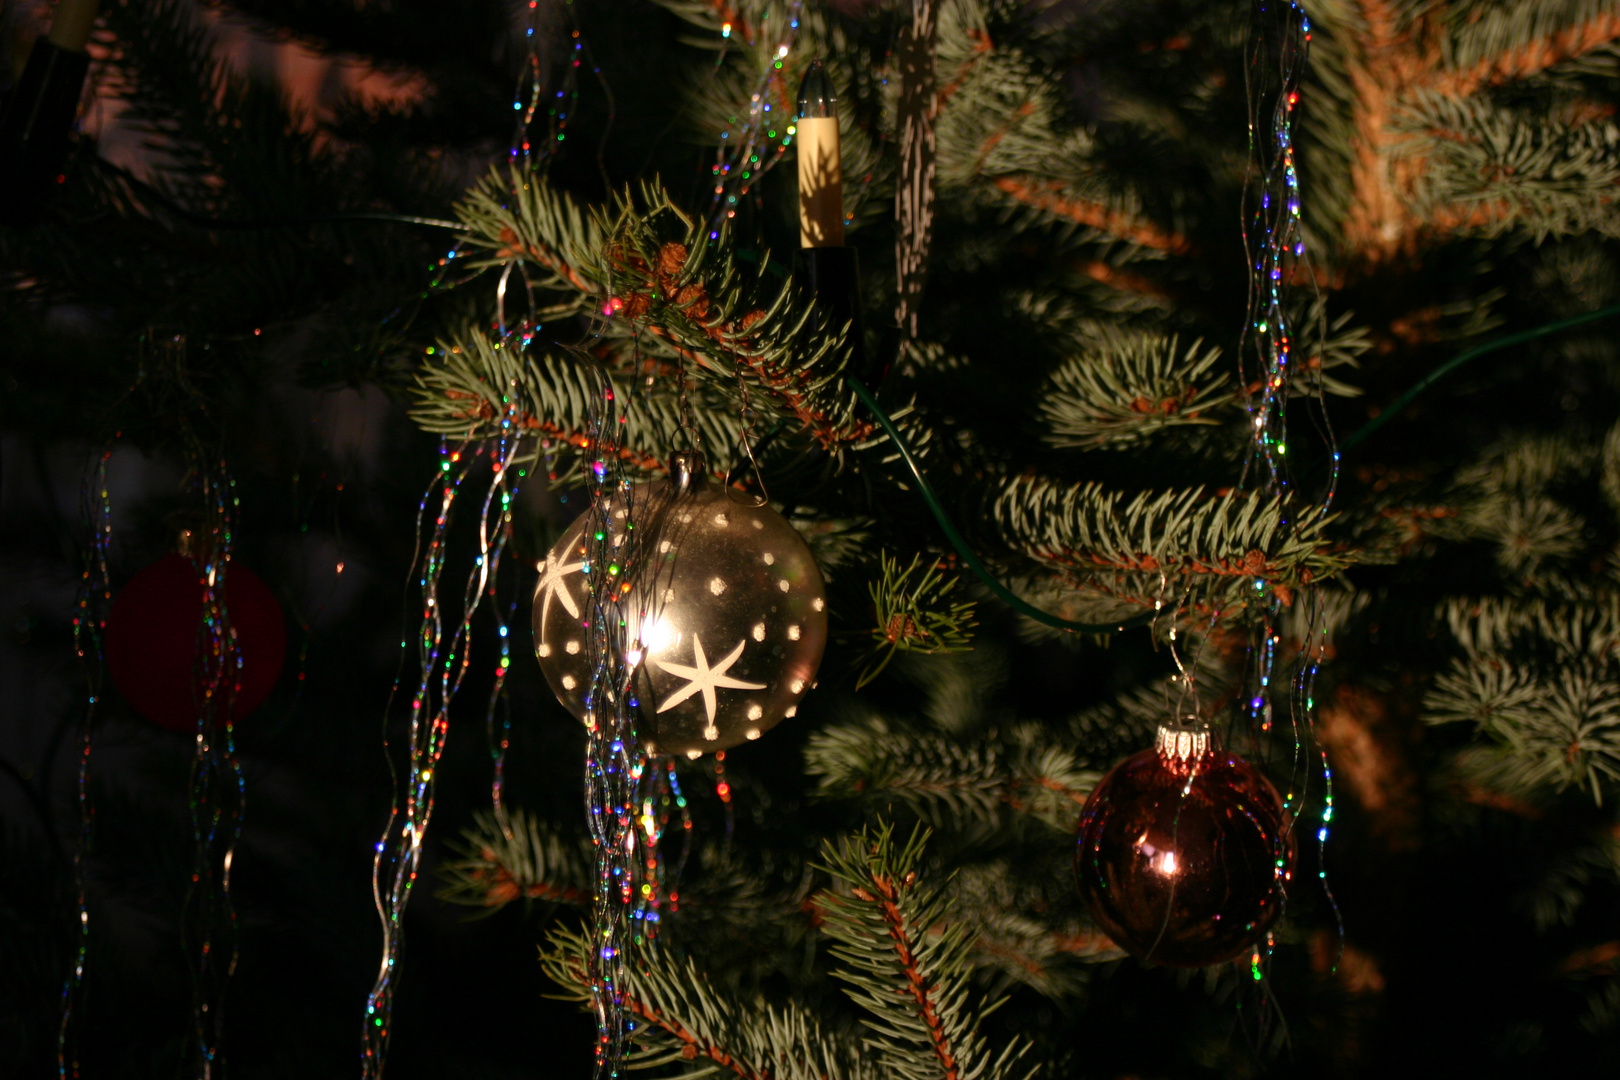 Am Weihnachtsbaum